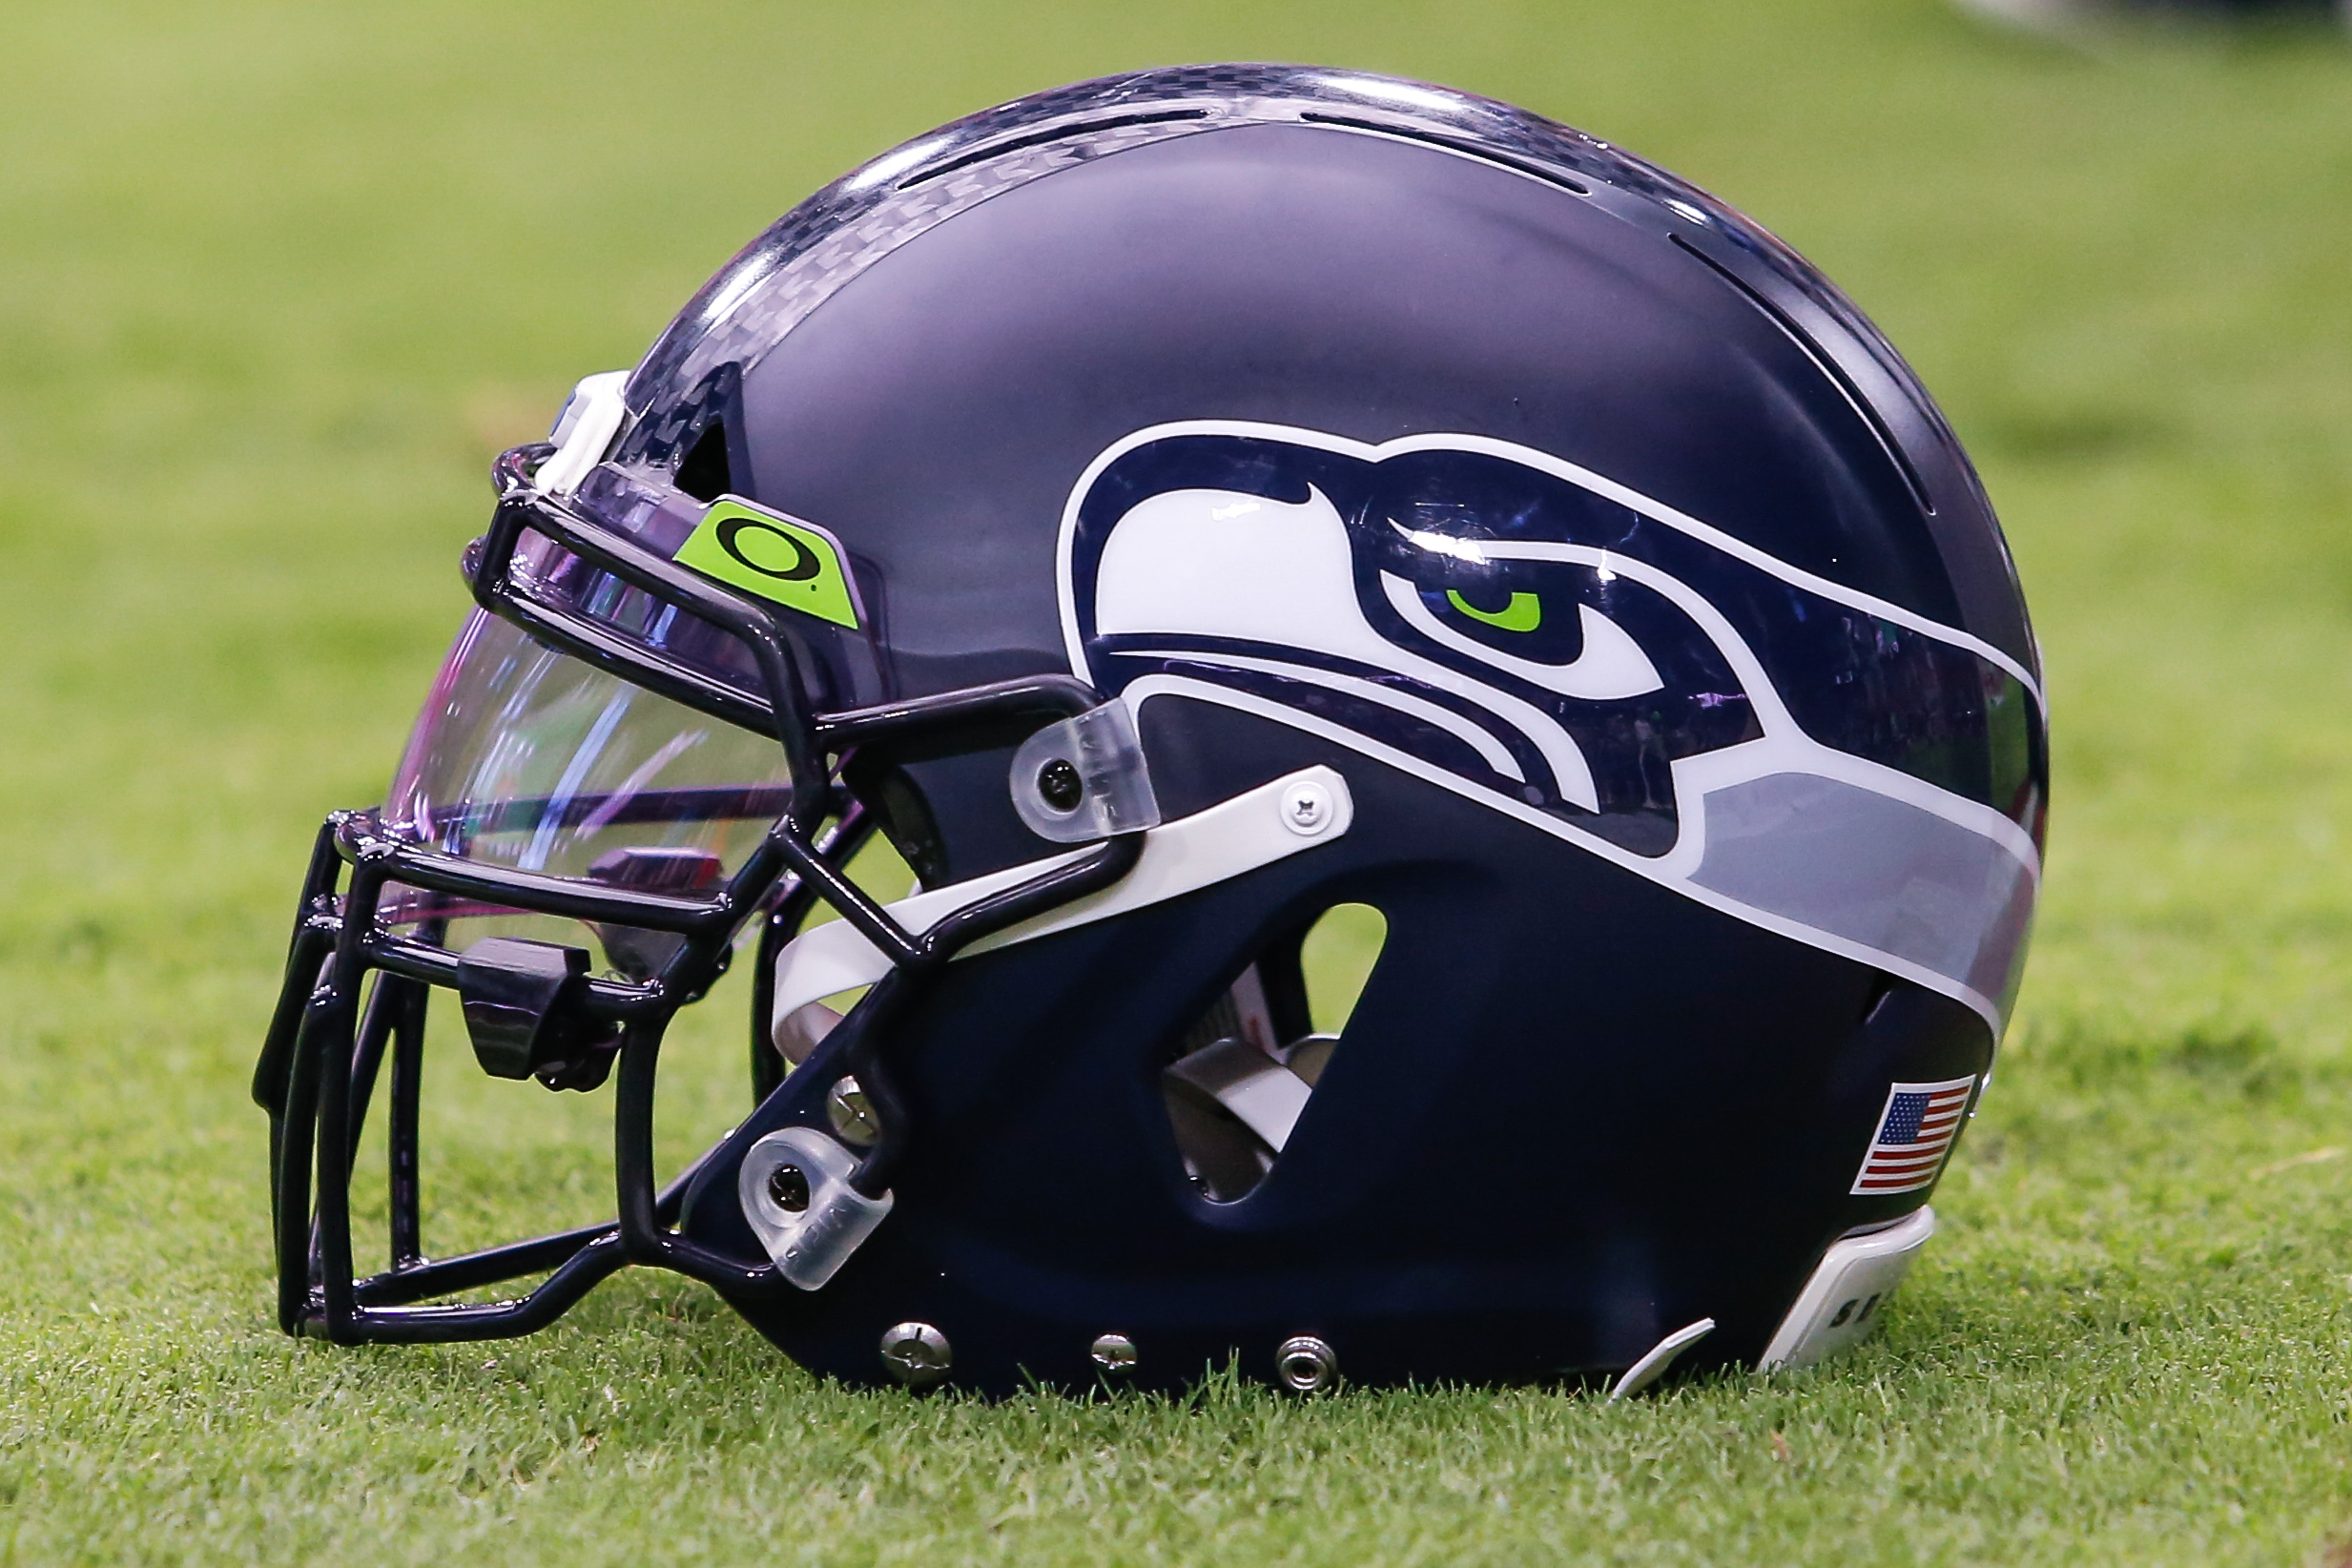 Seahawks helmet on the field